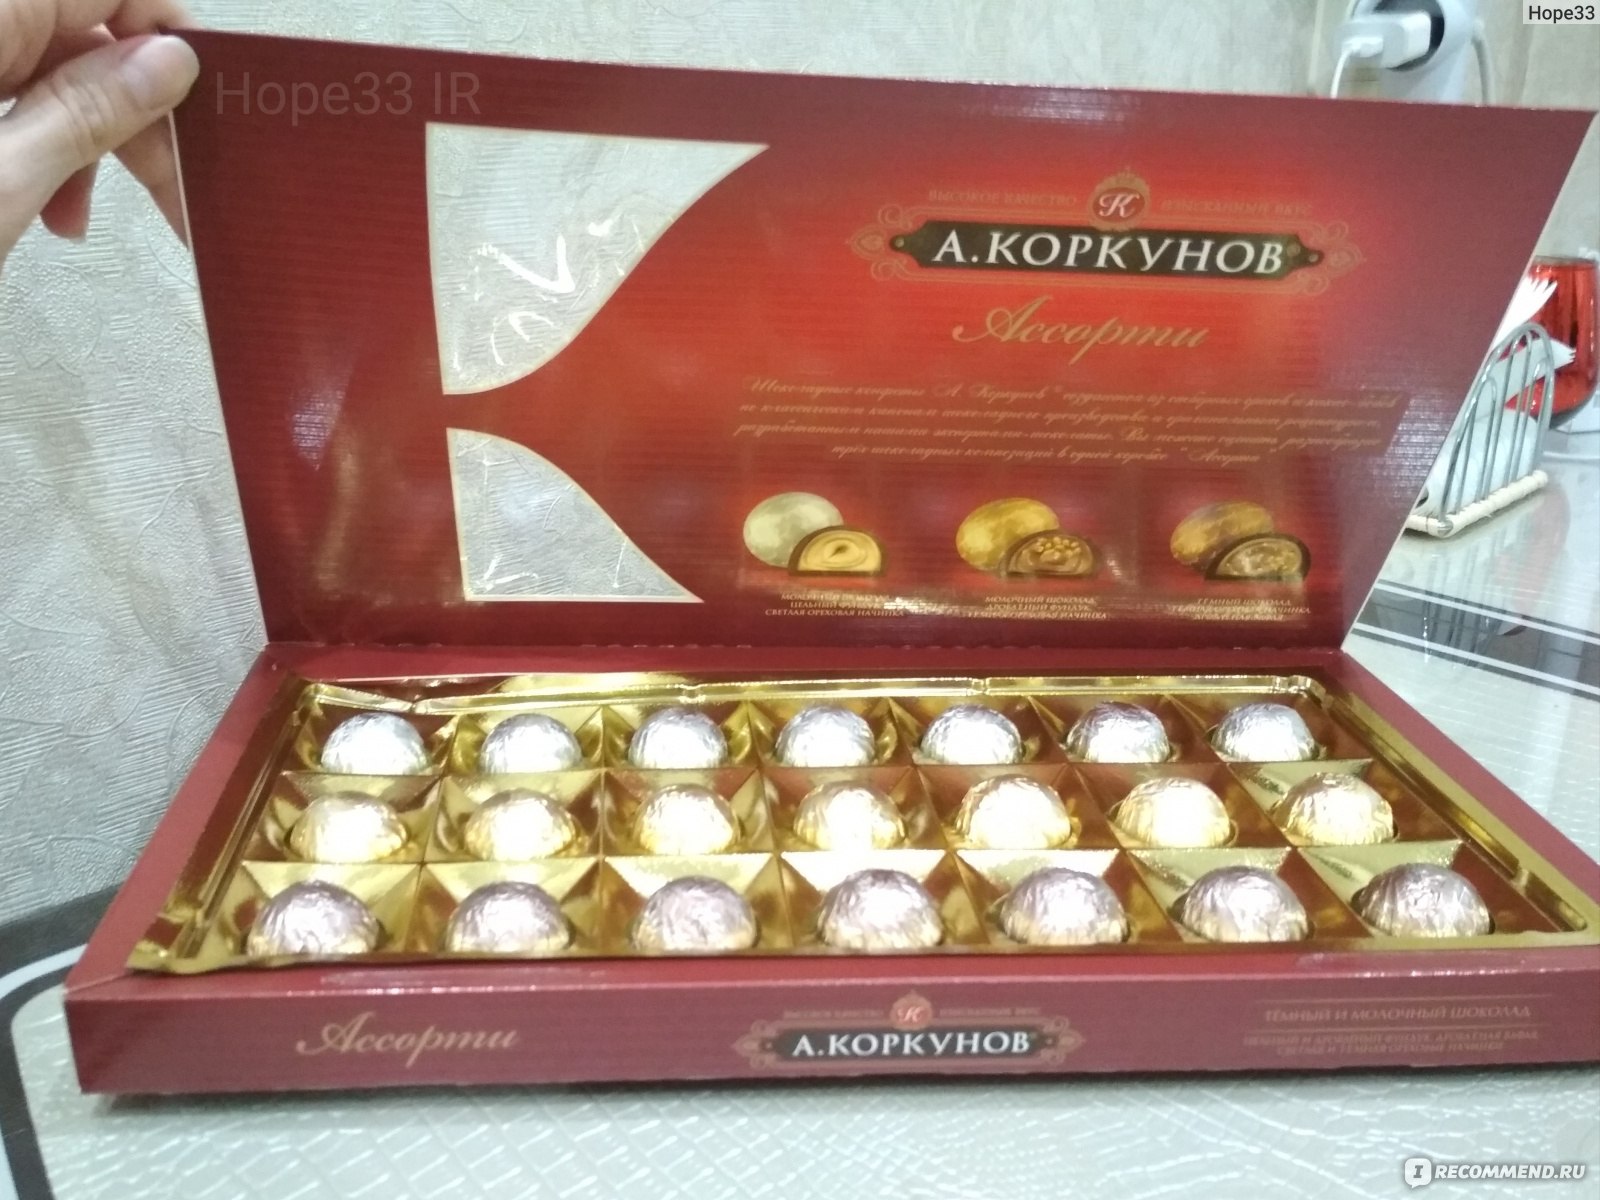 Бумажная упаковка для конфет, коробочки и формы - Купить в оптом в Красноярске